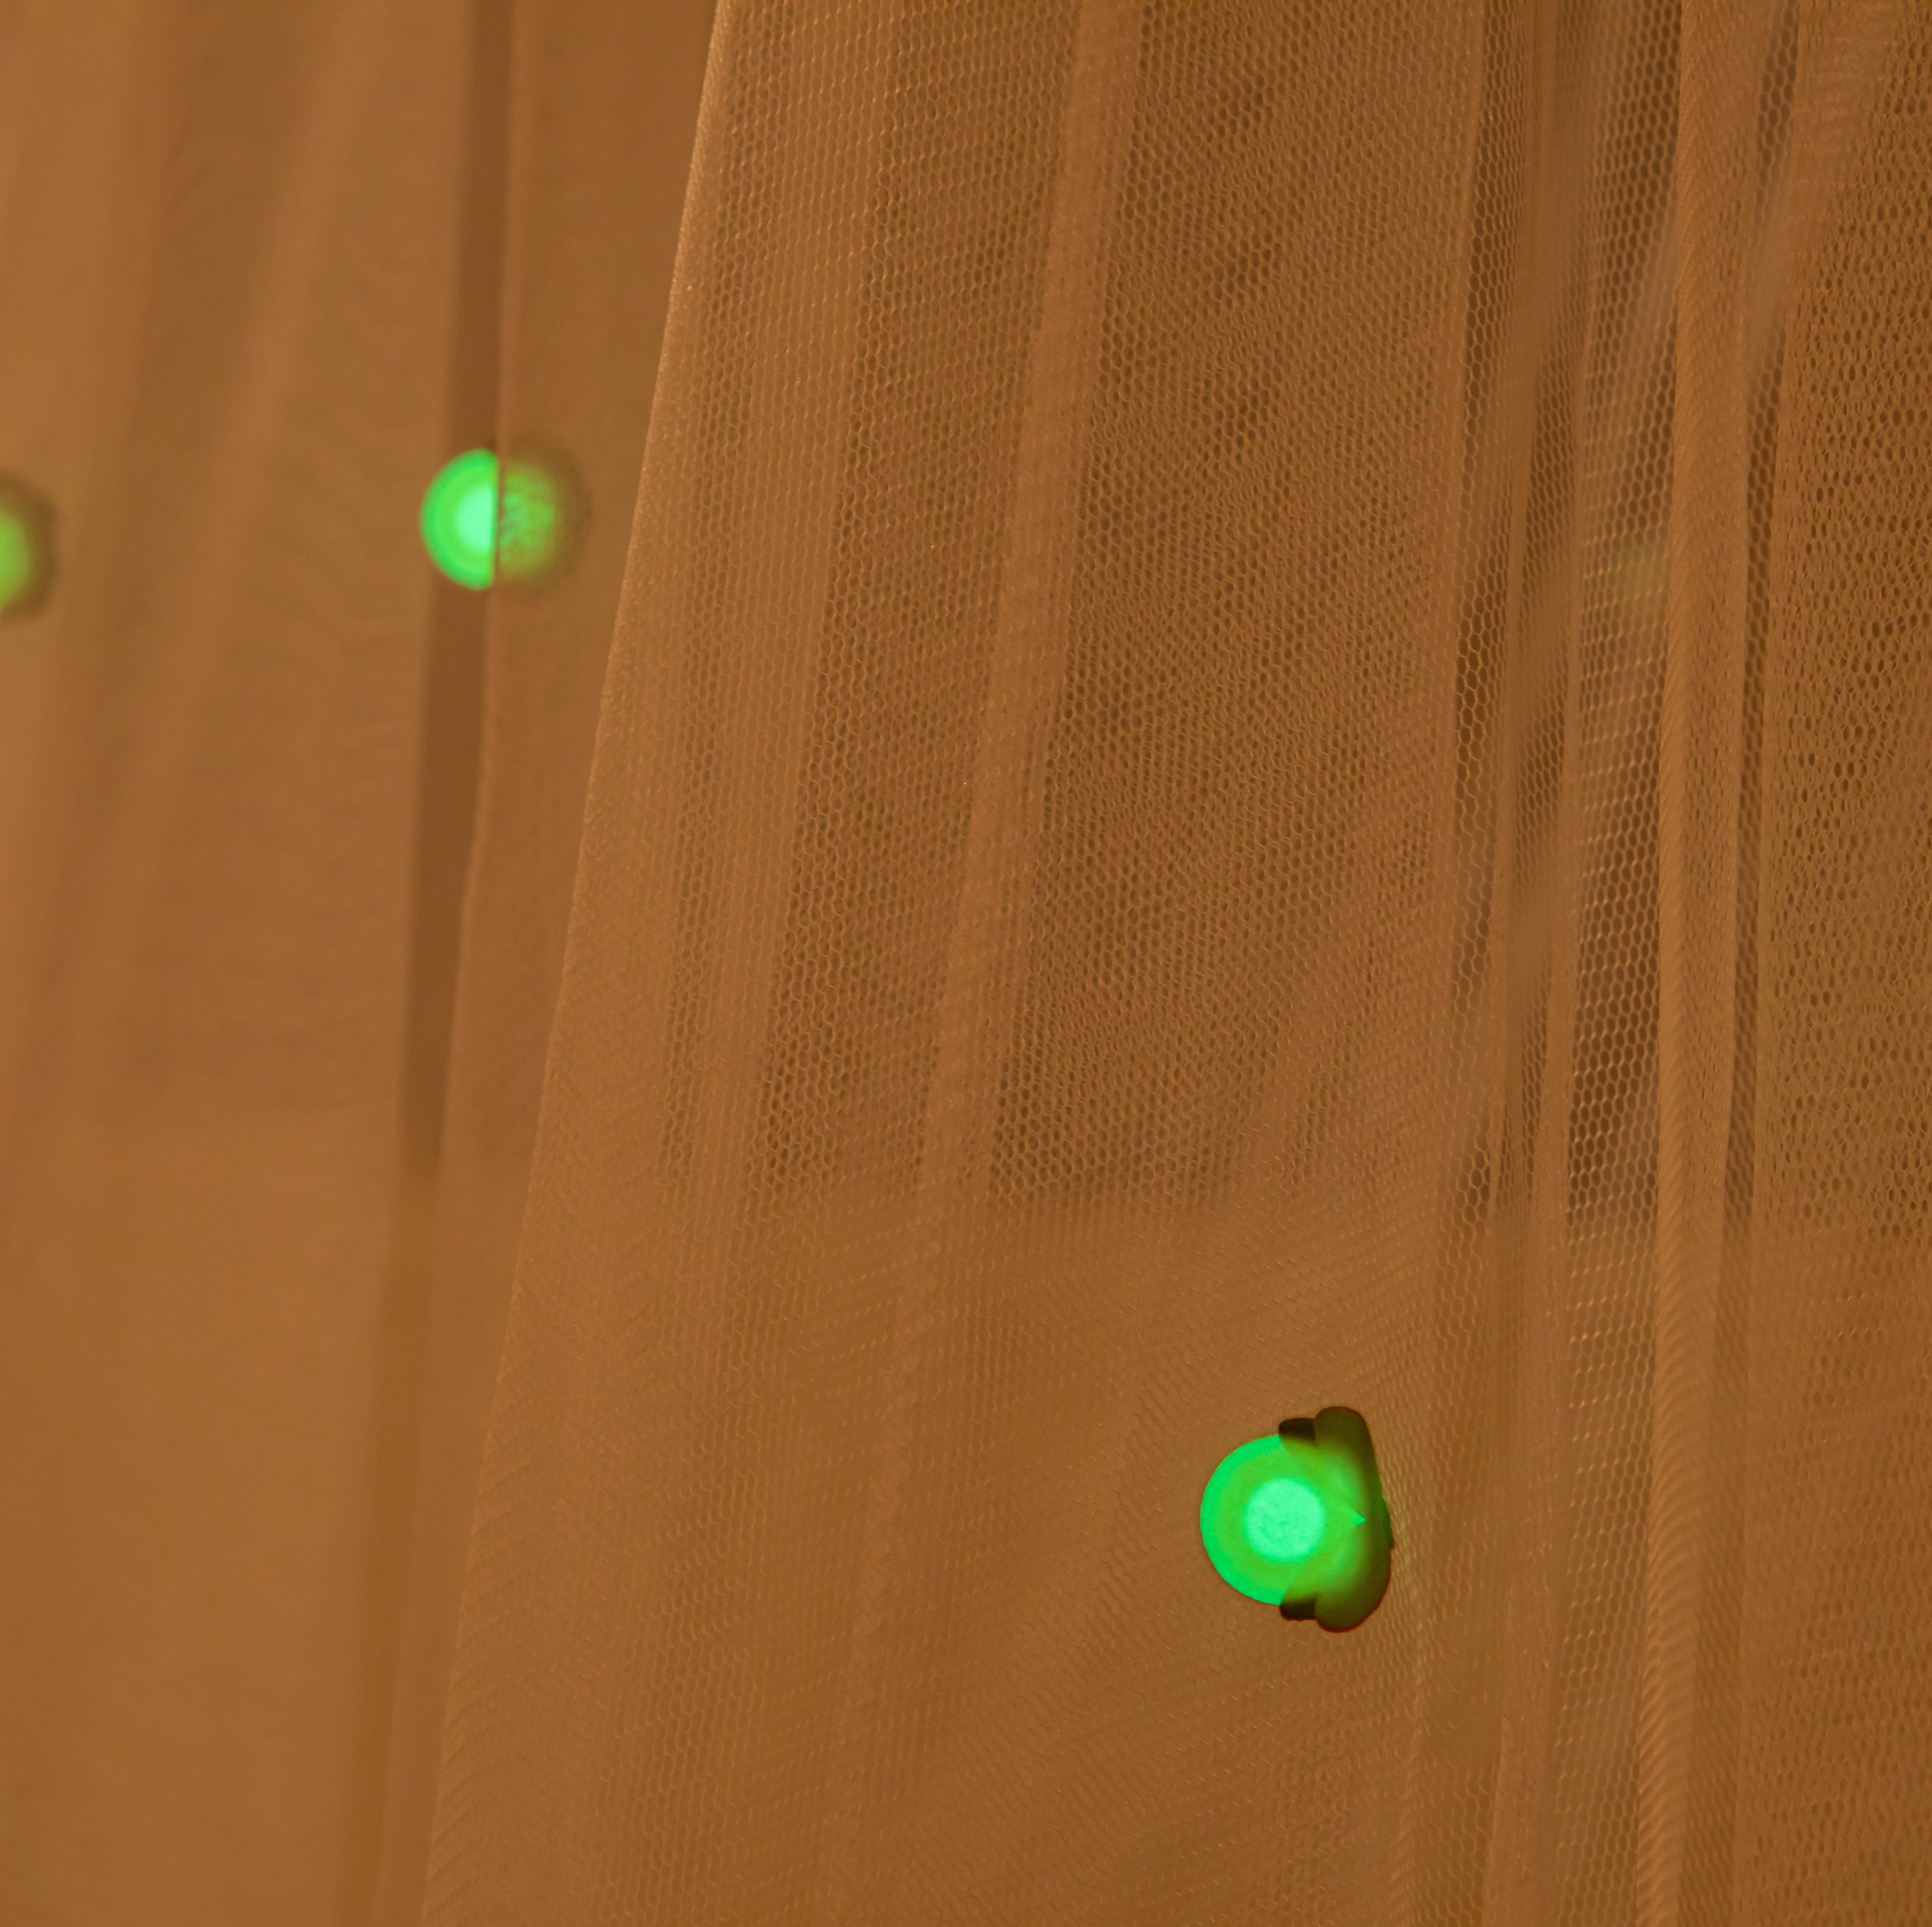 Einfache Einrichtung Wachsen im Dunkeln Firefly Concial White Mosquito Net Bed Canopy